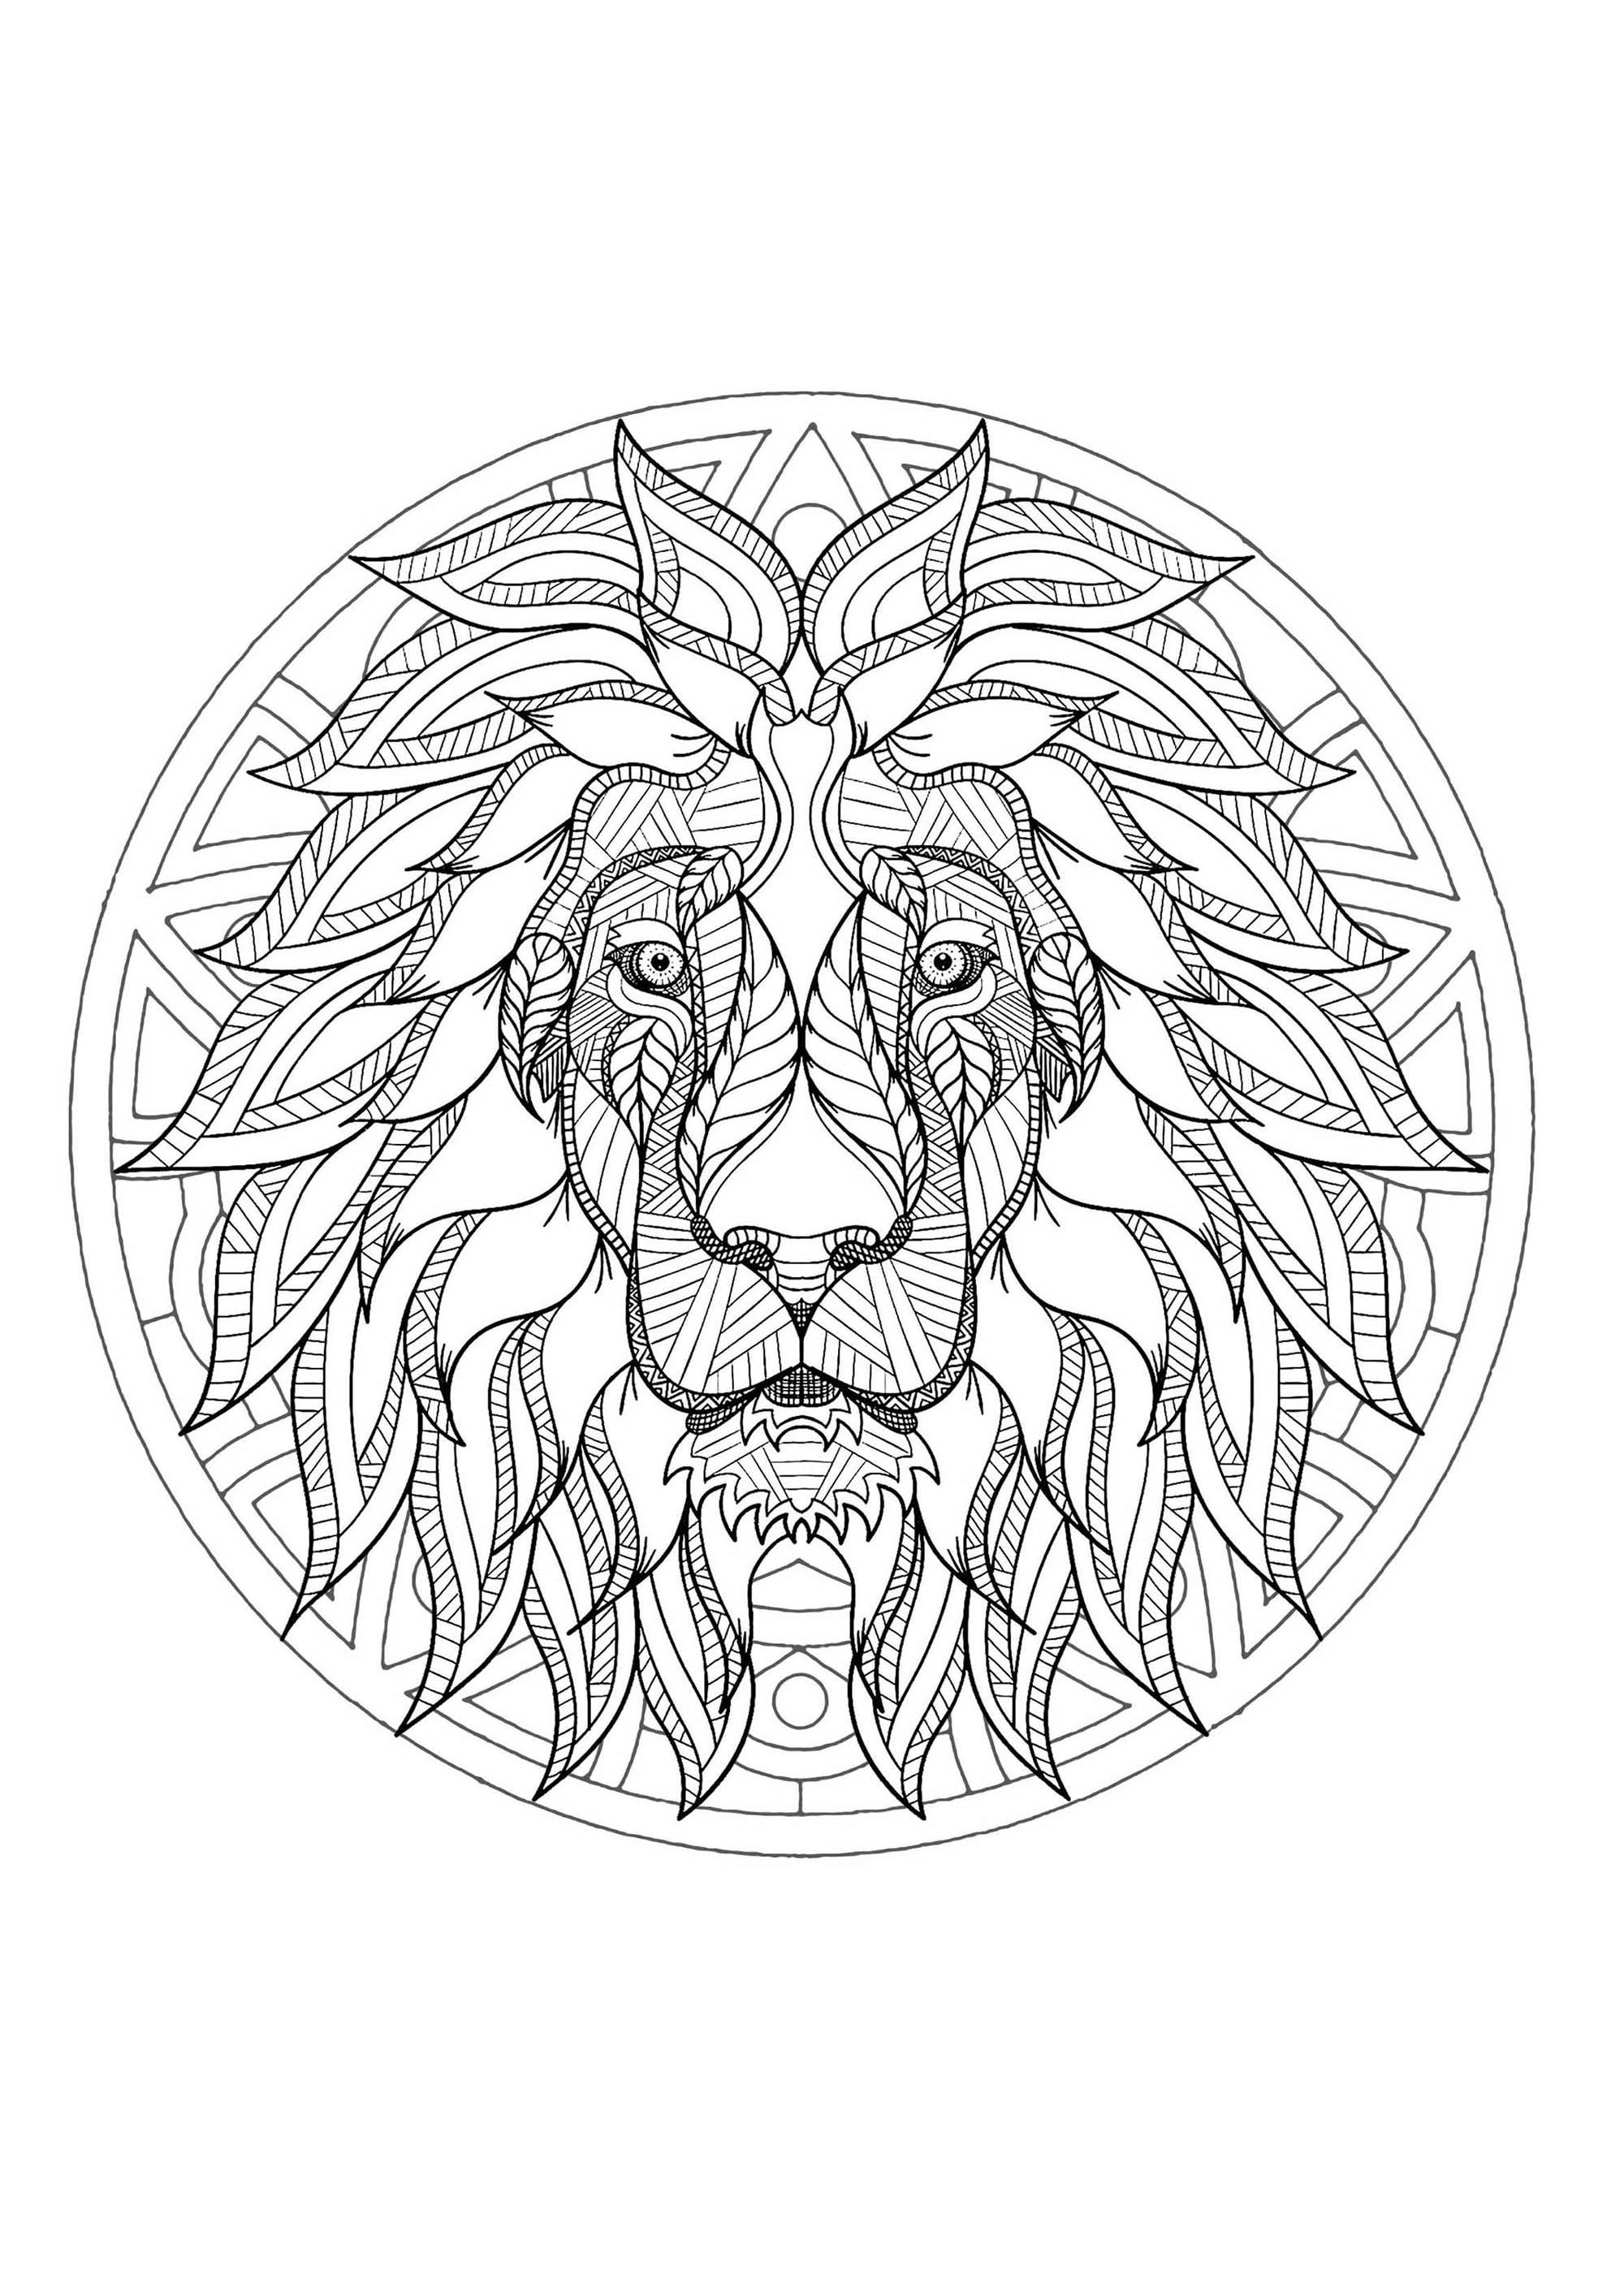 Mandala & Löwenkopf. Ein recht schwieriges Mandala zum Ausmalen, das perfekt ist, wenn Sie gerne kleine Bereiche ausmalen und verschiedene Details mögen.